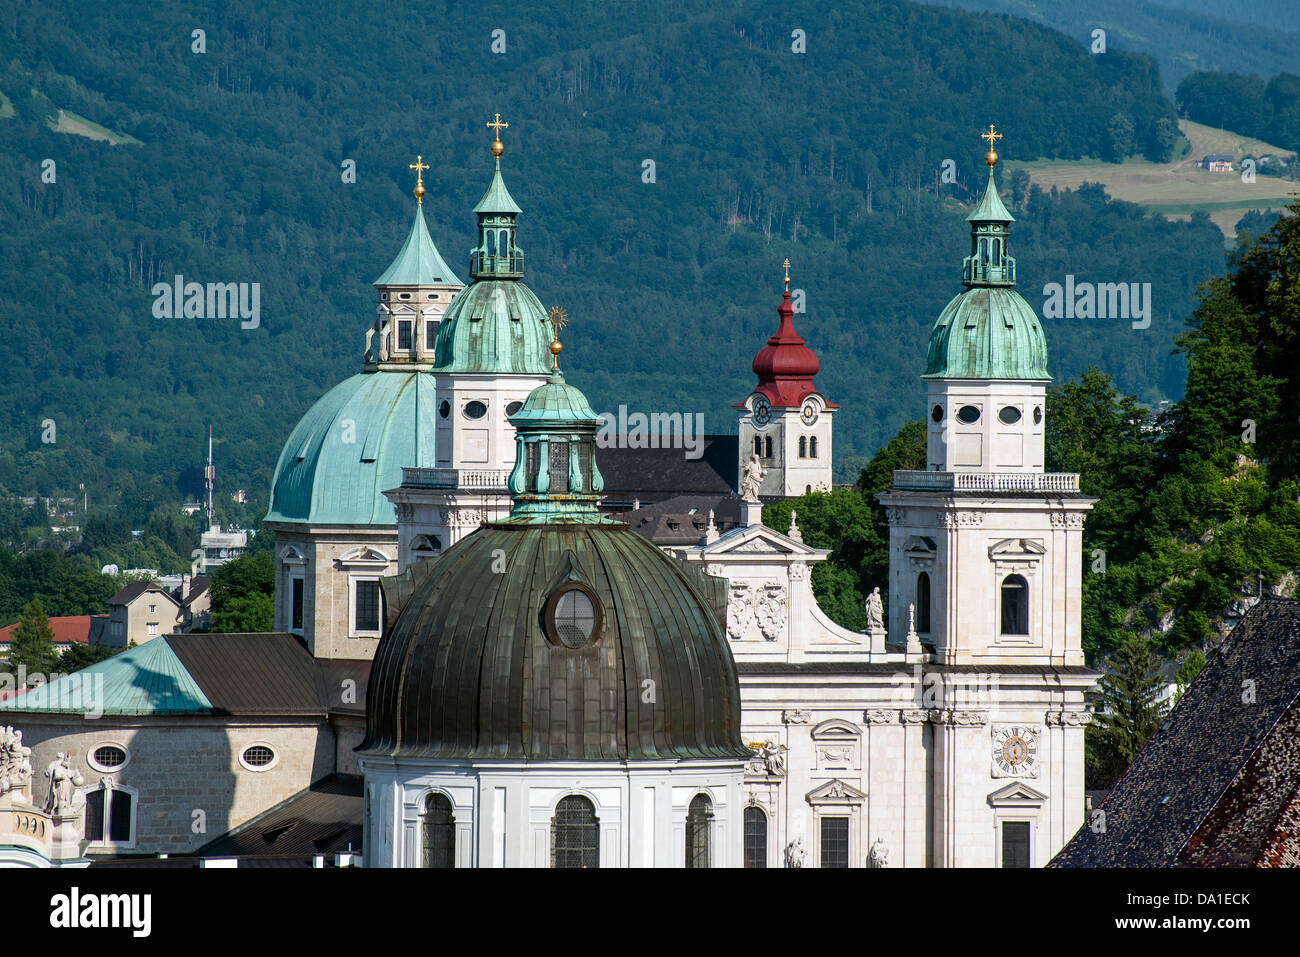 Panoramablick über Kuppeln und Glockentürme in der Altstadt, Salzburg, Österreich Stockfoto